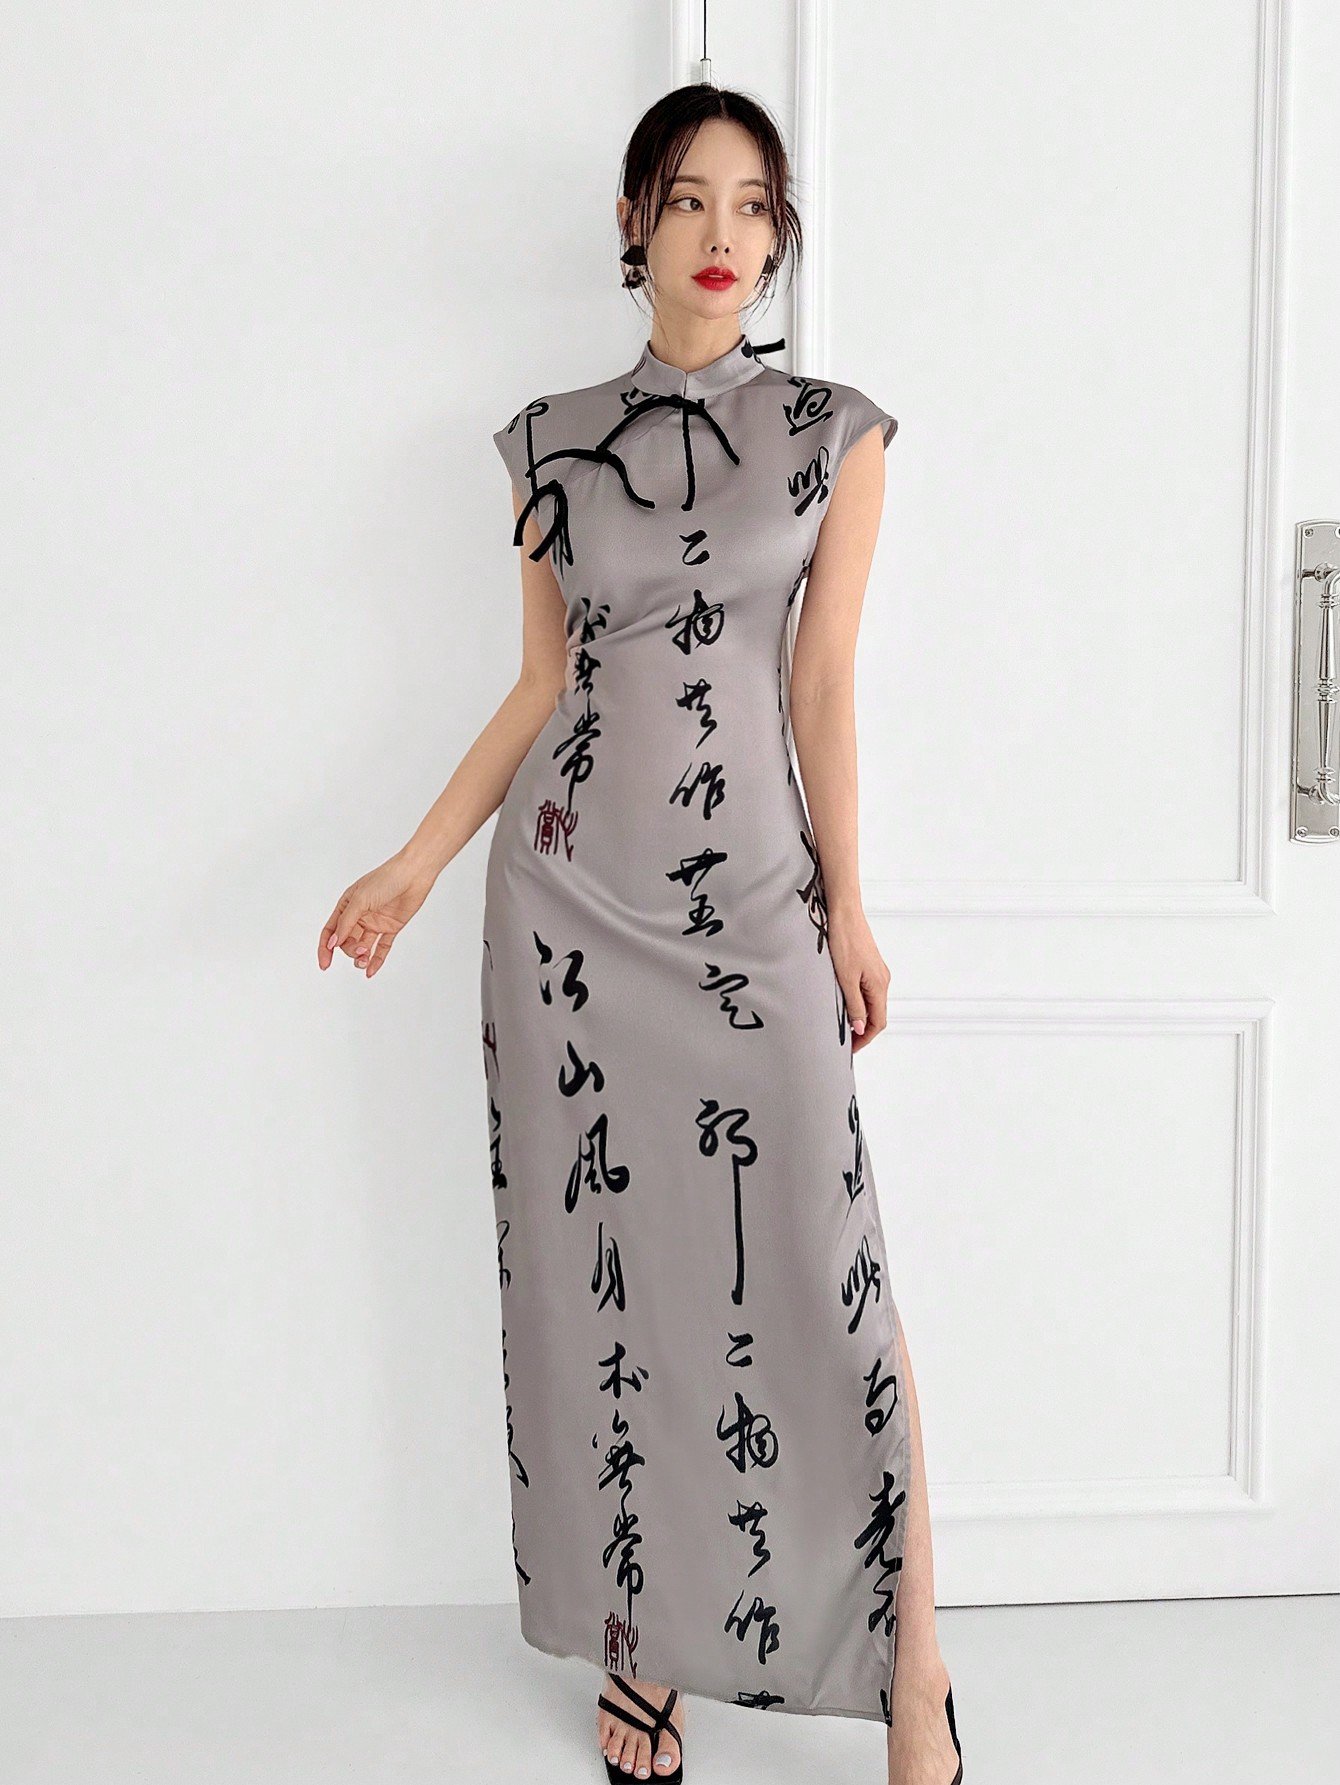 新しい中国風のカラーブロックチャイナドレス、サテンプリント素材でバックレスになったデザイン、バックルの装飾